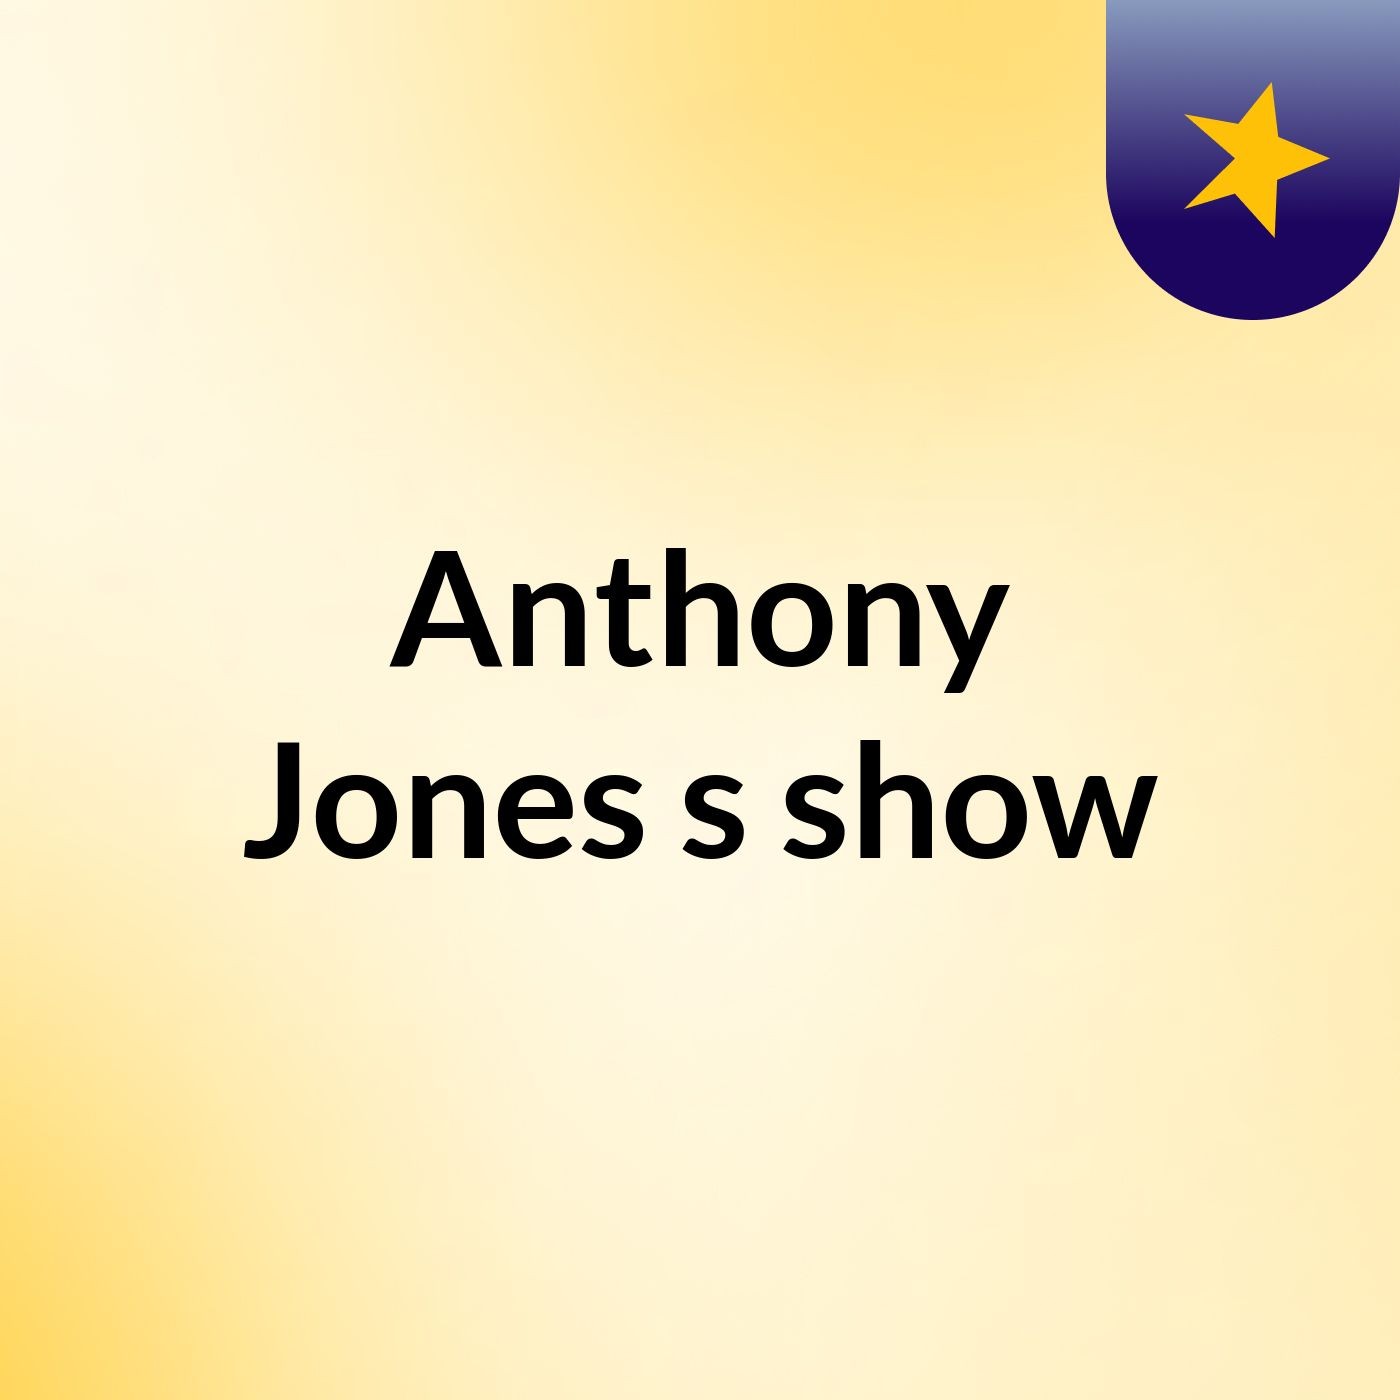 Anthony Jones's show